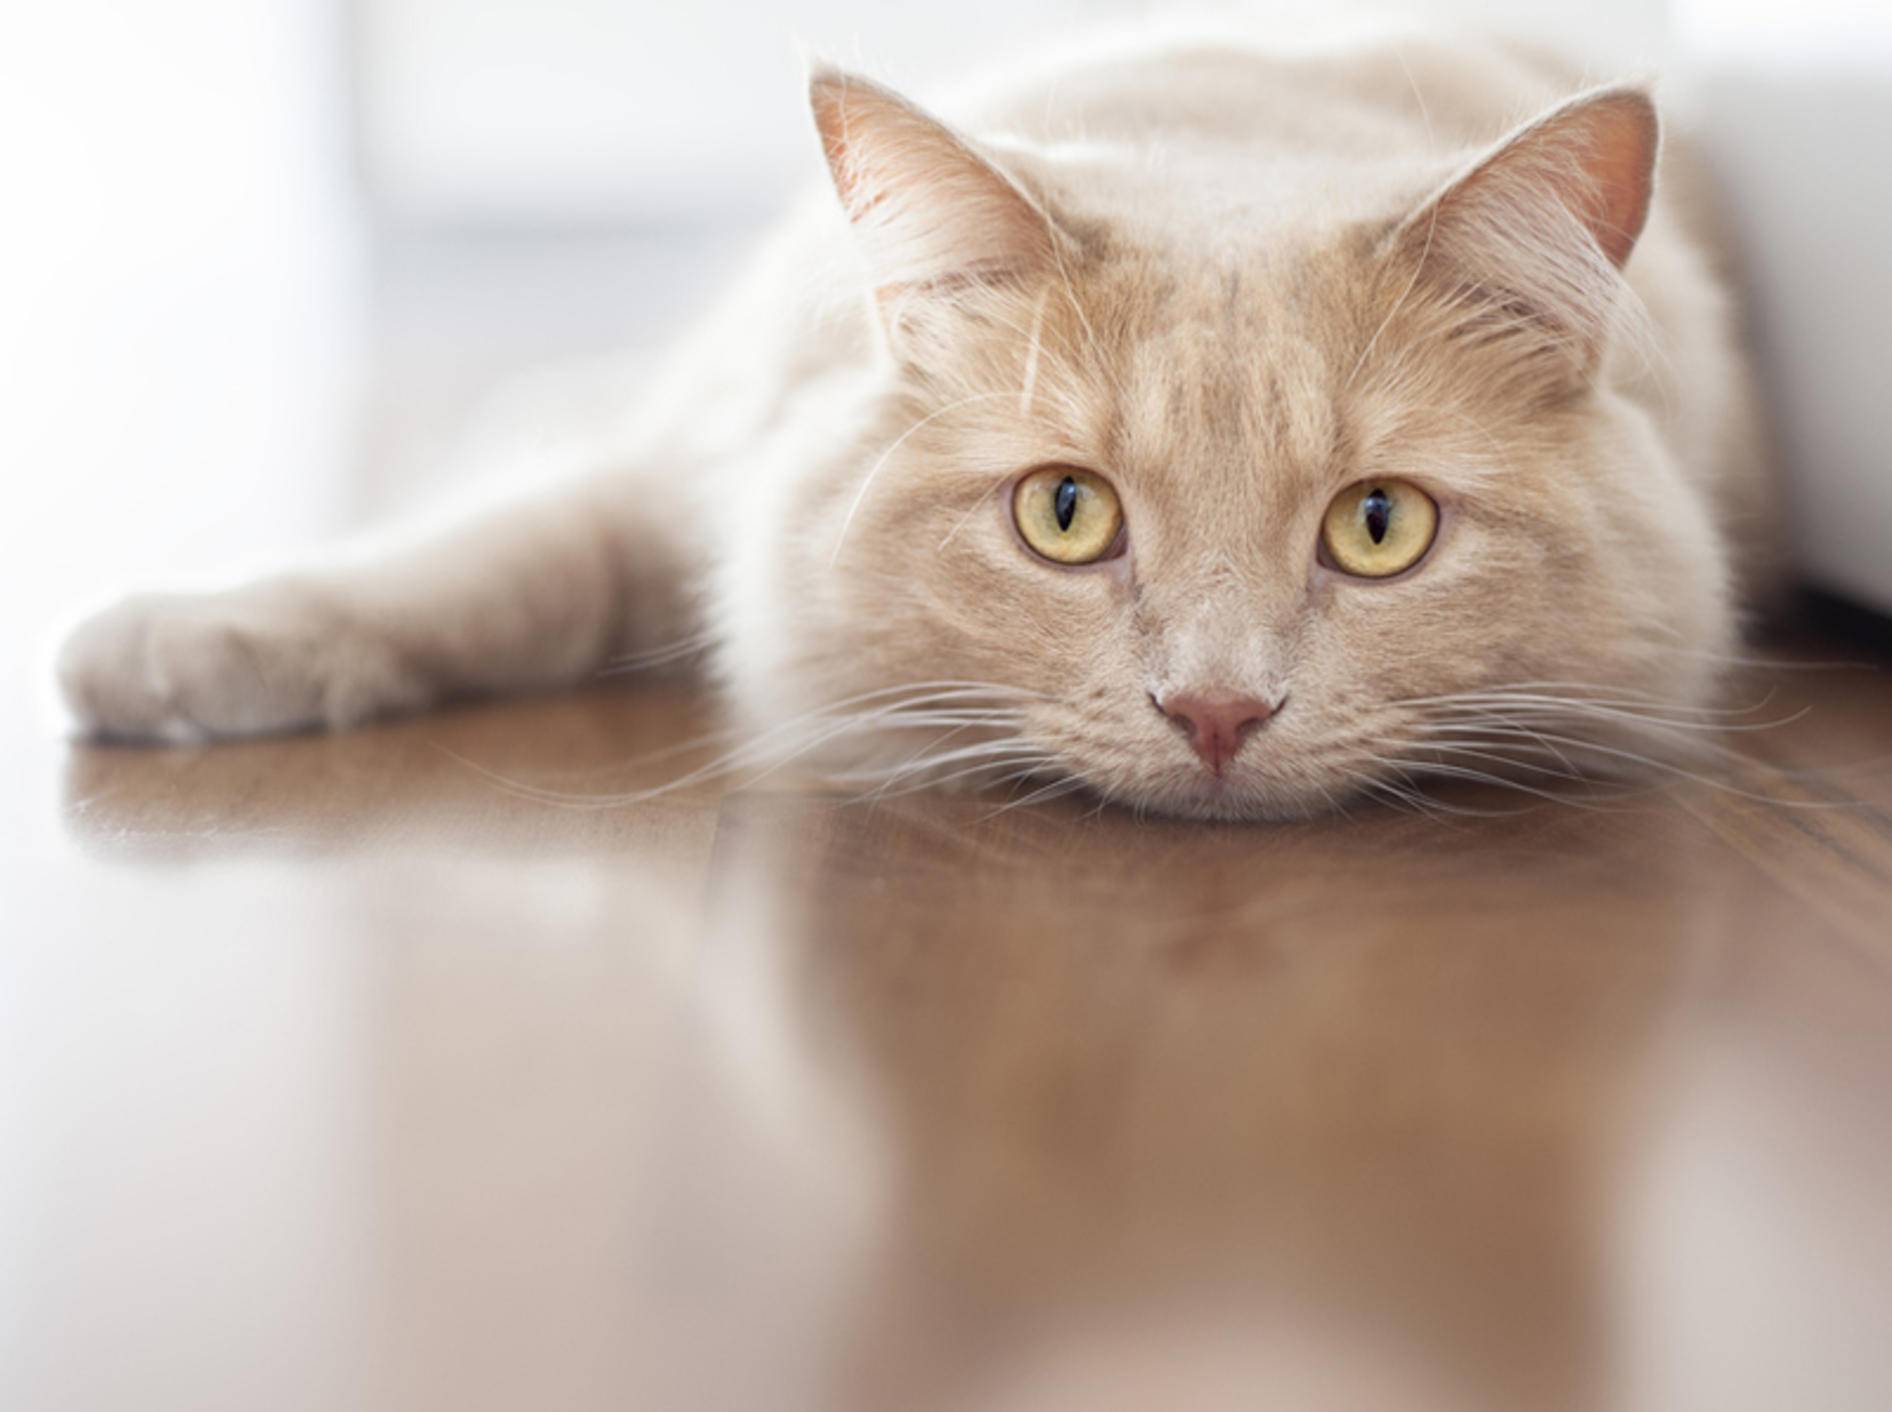 Leberinsuffizienz bei Katzen kann der Tierarzt in vielen Fällen behandeln – Bild: Shutterstock / Stefano Garau